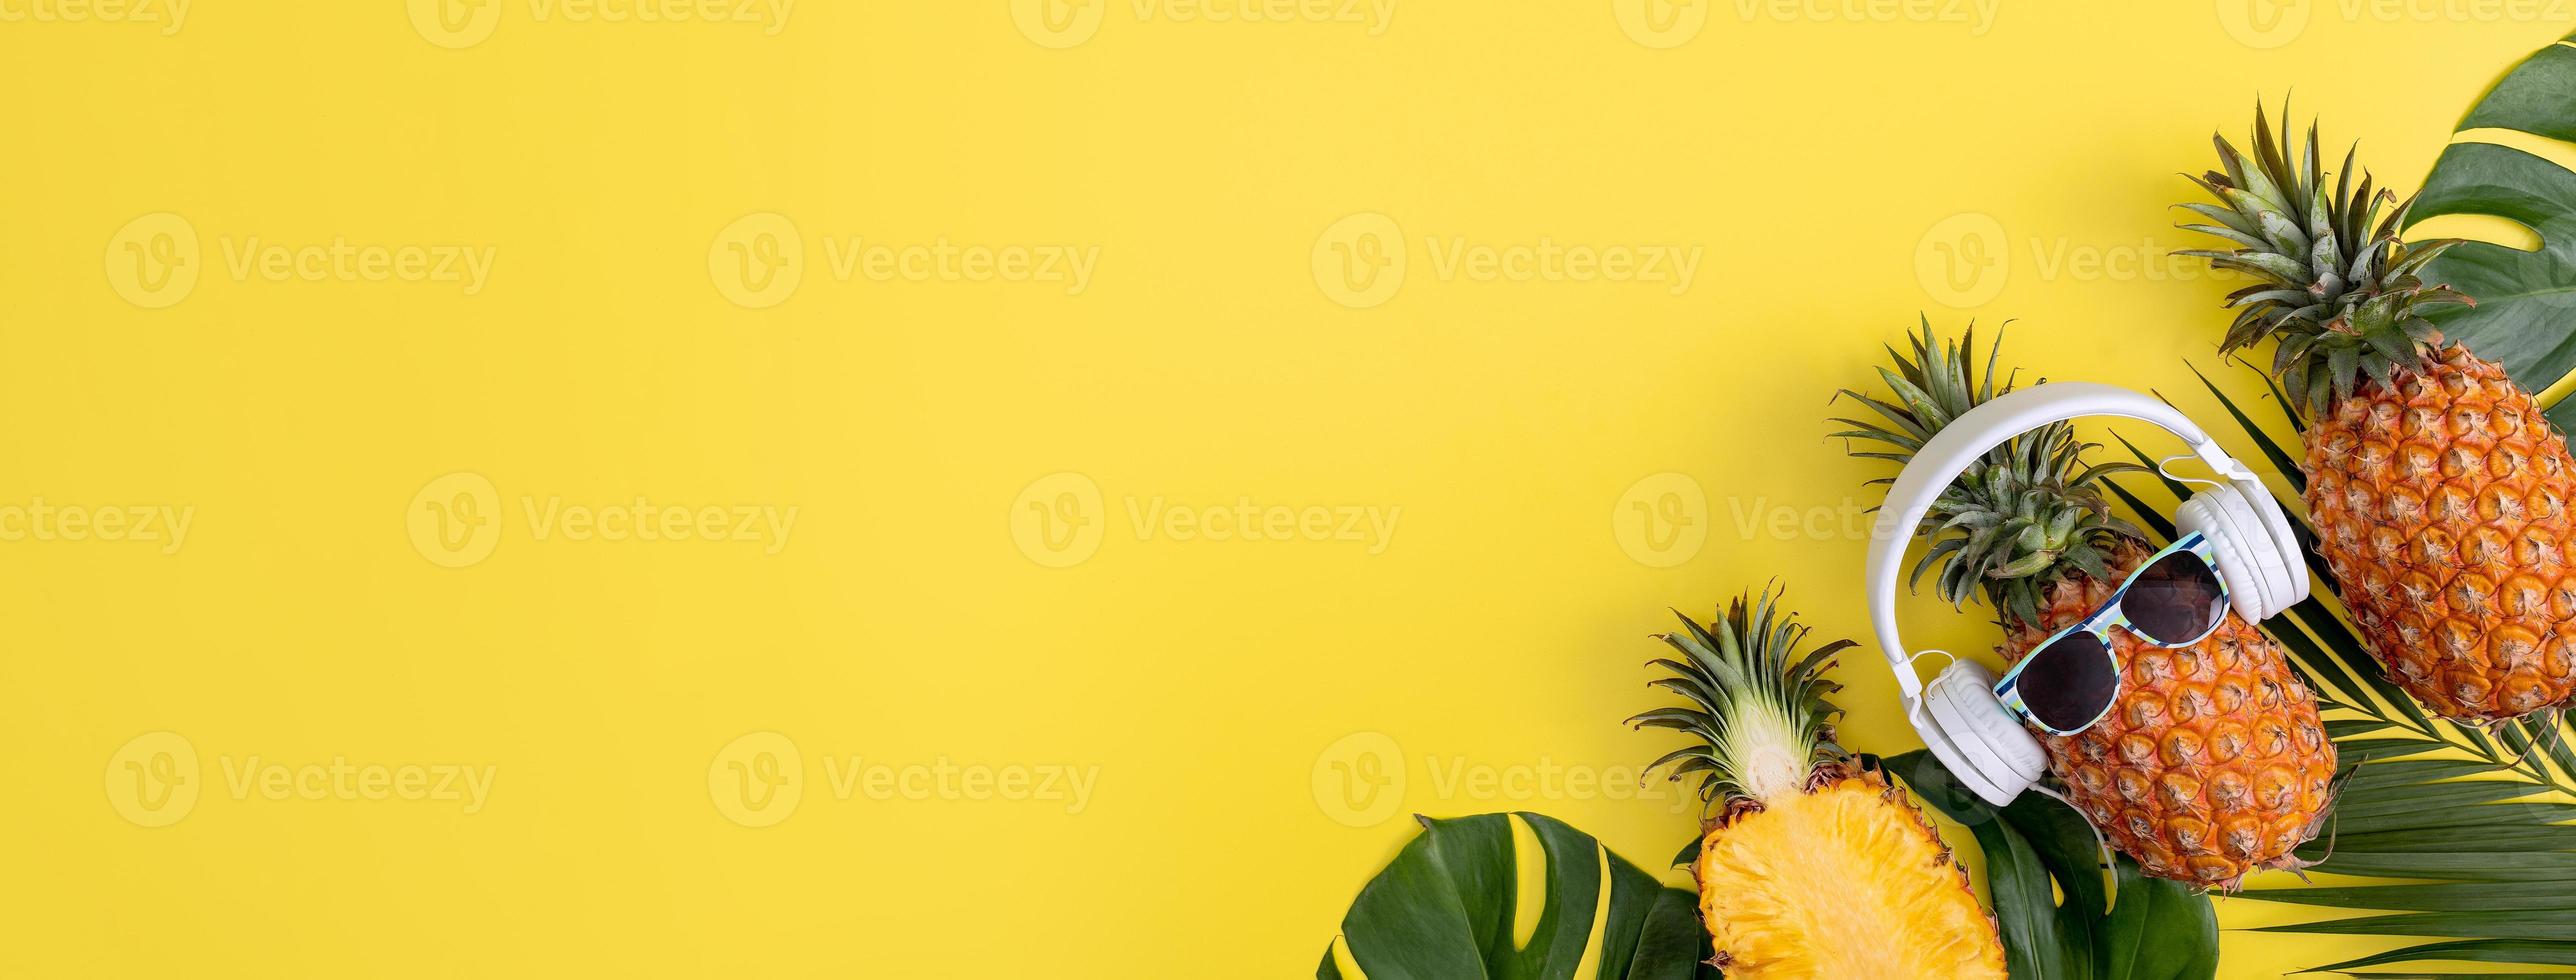 ananas drôle portant un casque blanc, écouter de la musique, isolé sur fond jaune avec des feuilles de palmier tropicales, vue de dessus, concept de conception à plat. photo